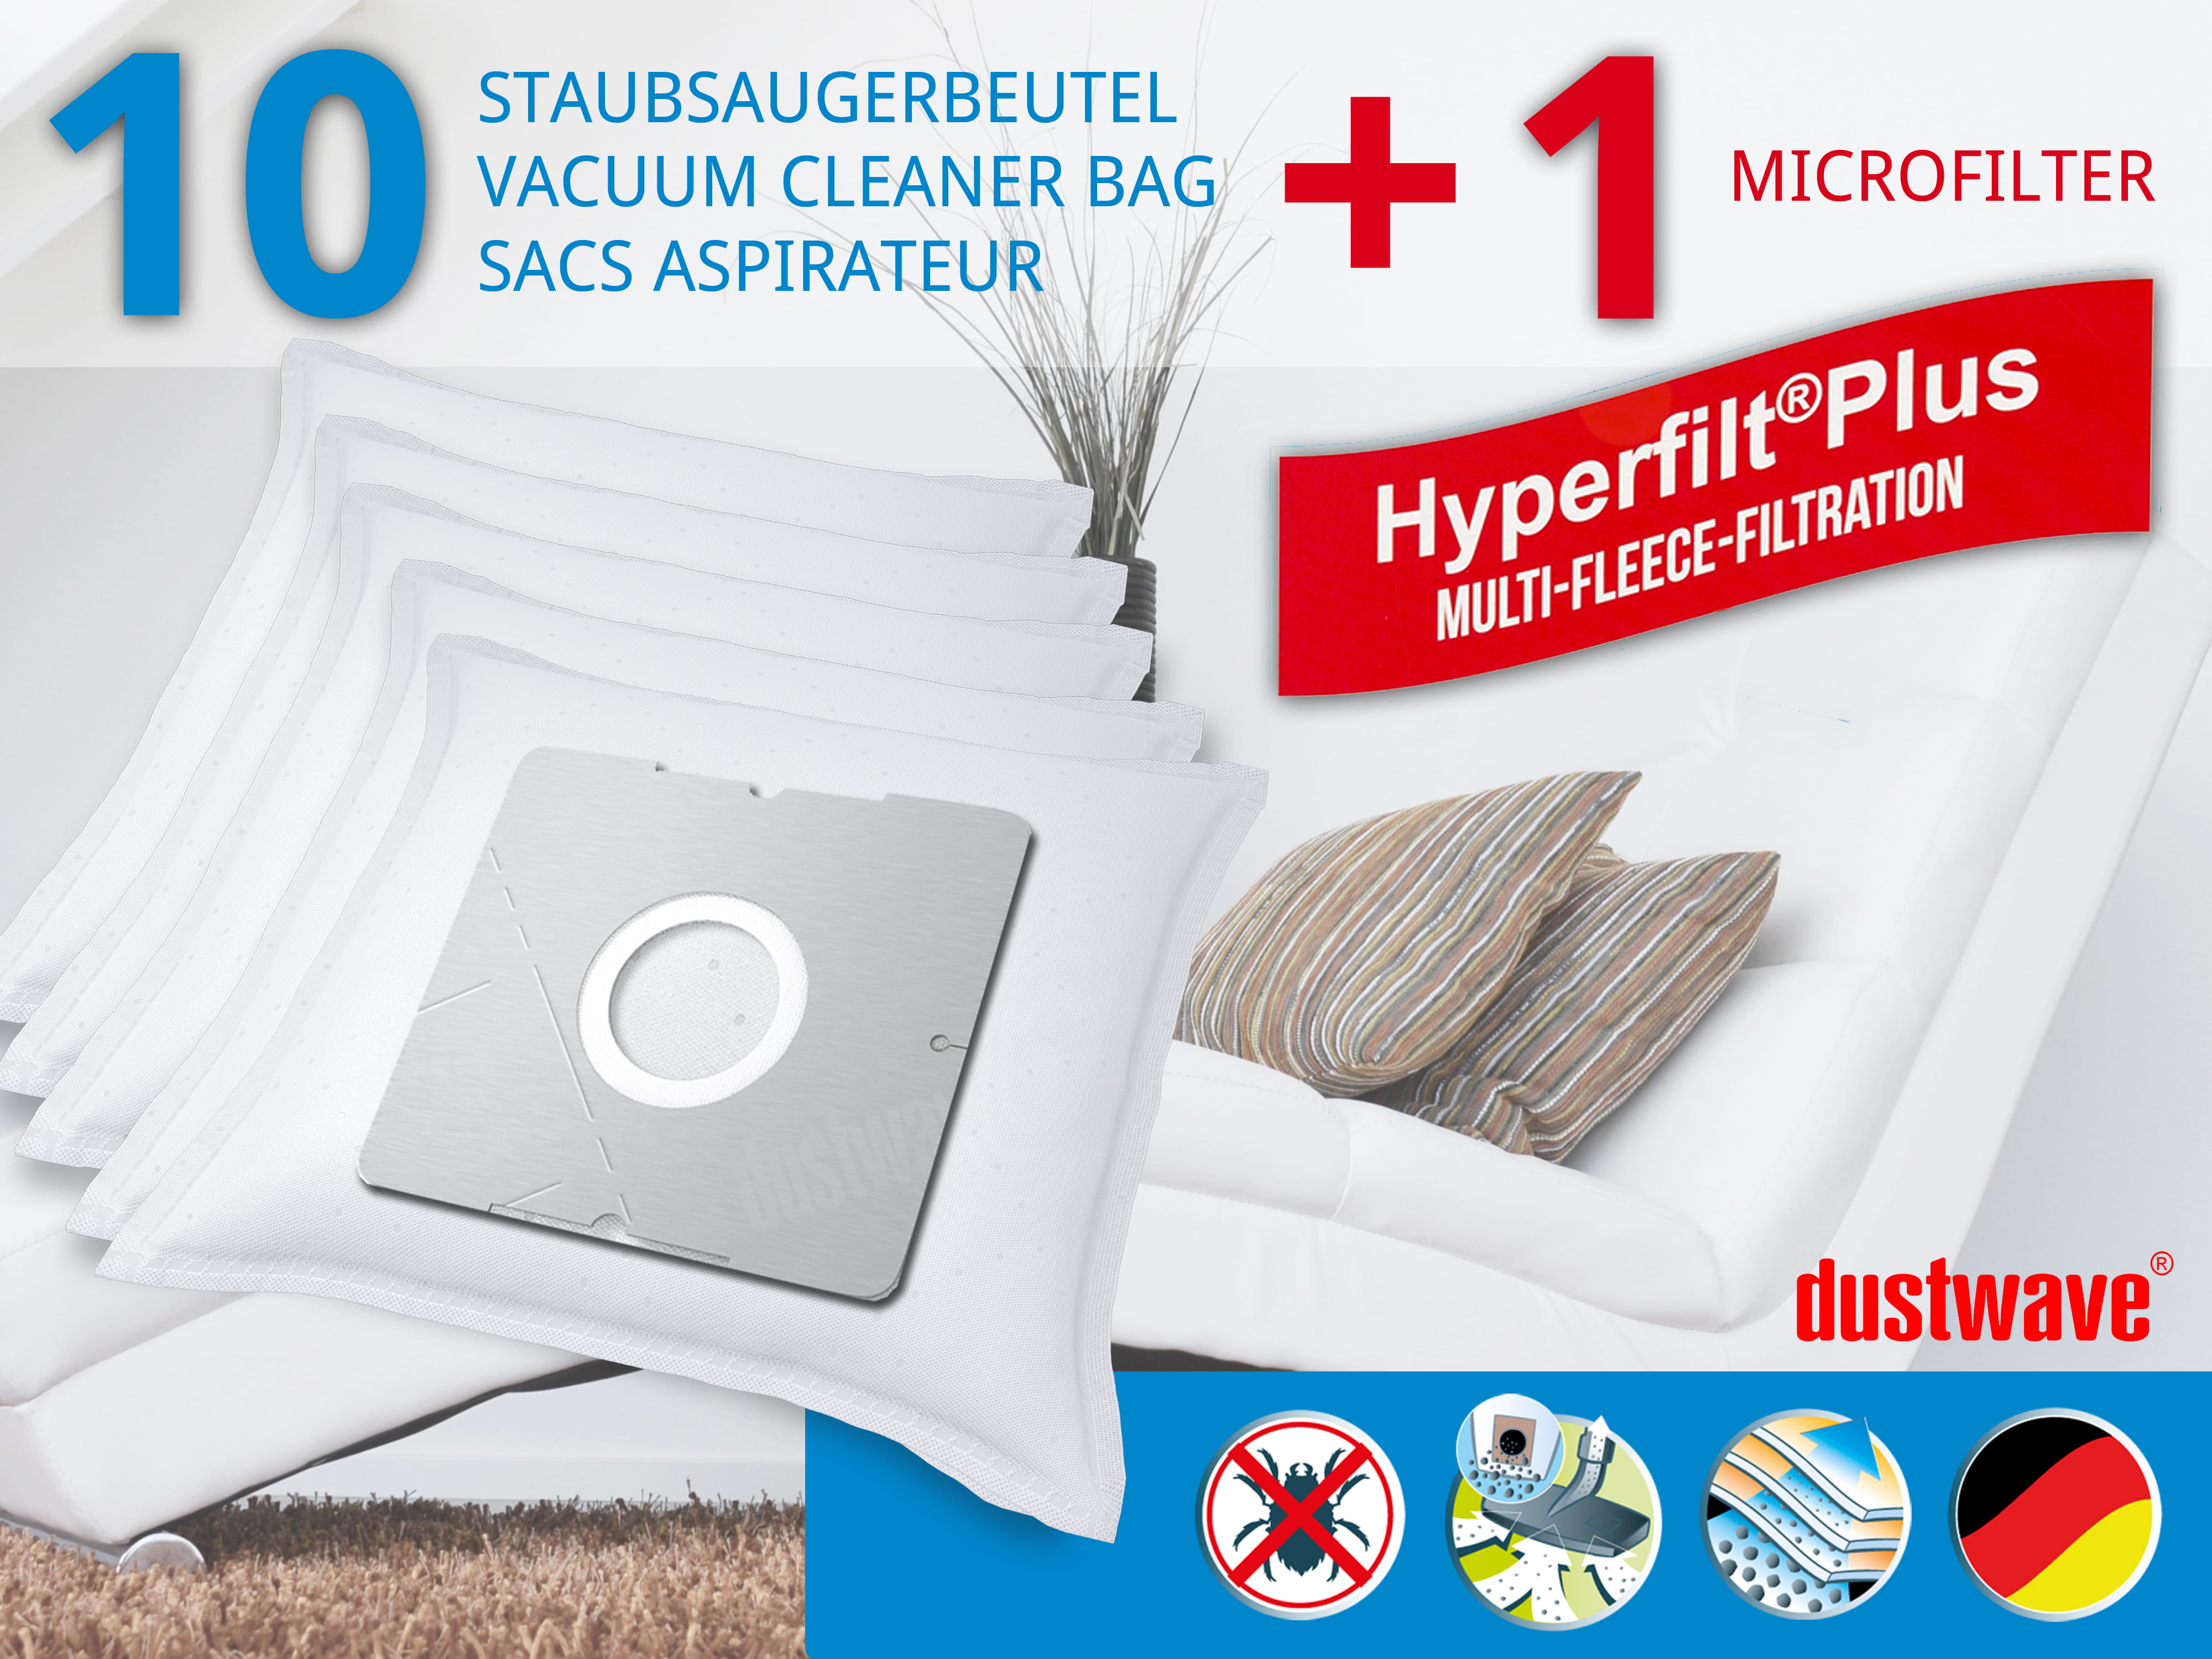 Dustwave® 10 Staubsaugerbeutel für Base BA 1900 - hocheffizient, mehrlagiges Mikrovlies mit Hygieneverschluss - Made in Germany